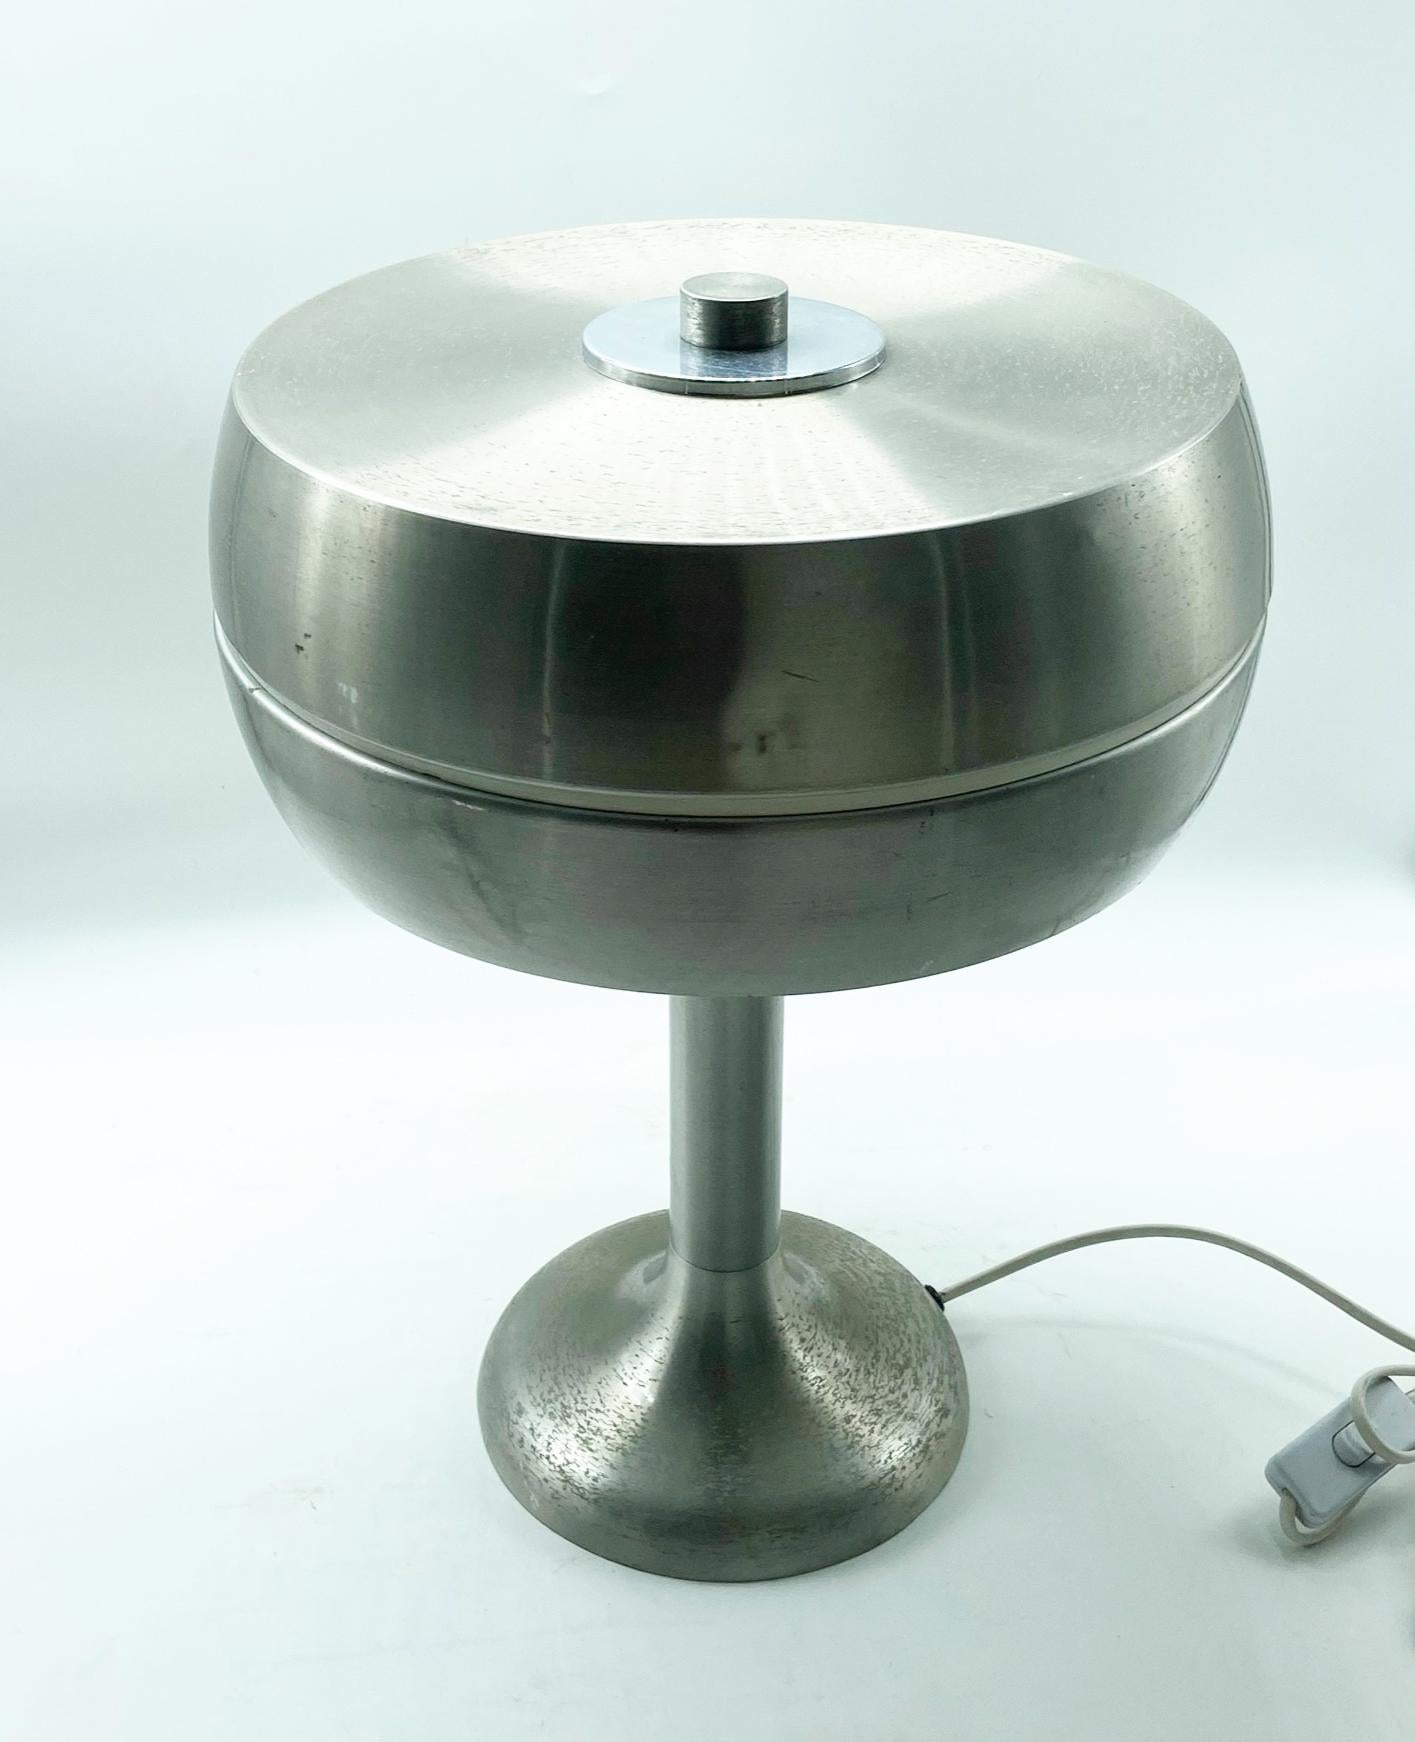 Lampe de table en aluminium nickelé brossé des années 1960.